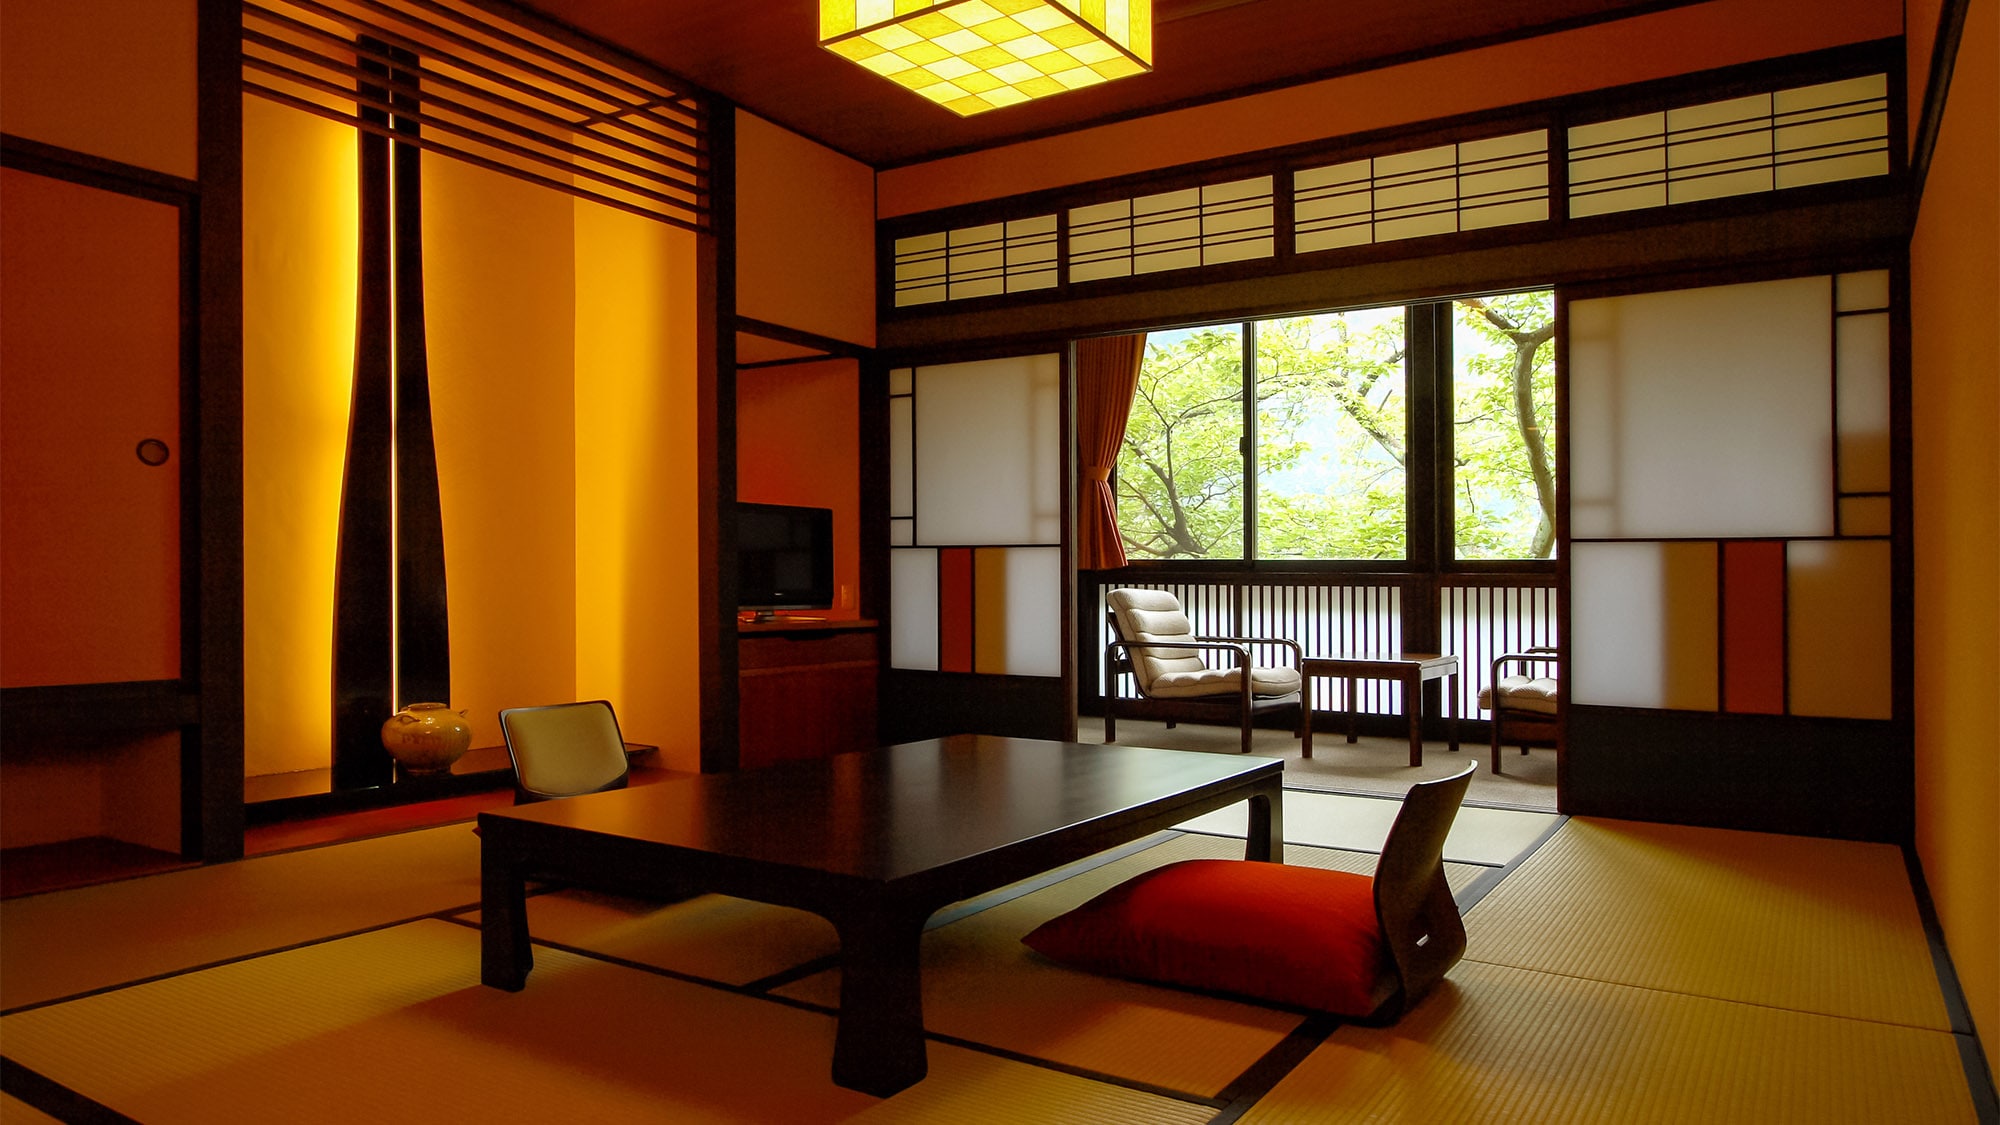 ・10張榻榻米的現代日式房間